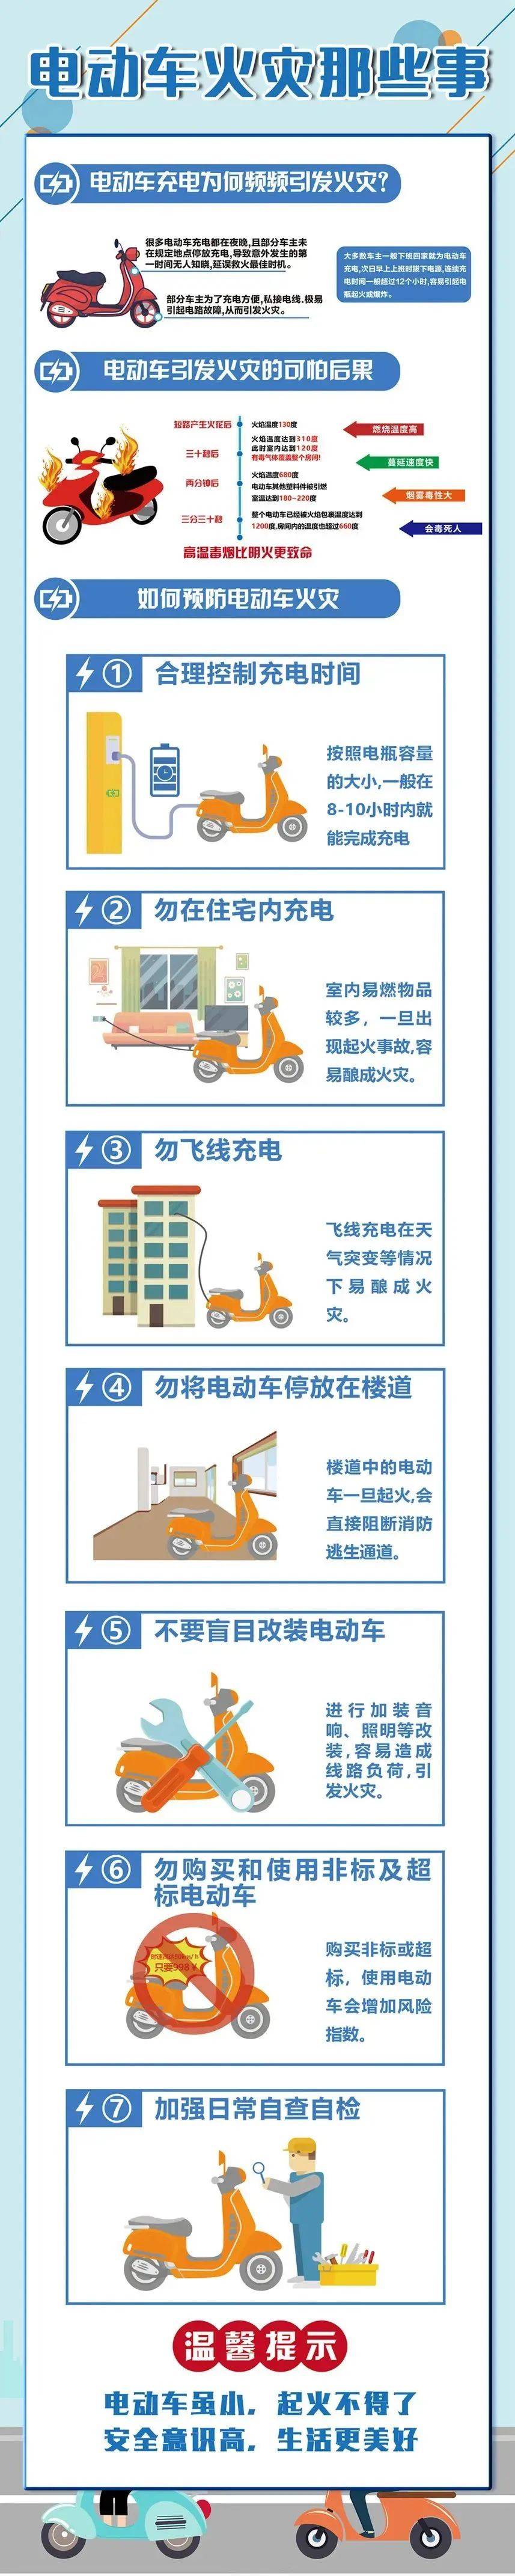 中国交通新闻网 :7777888888管家婆中特-清理“僵尸”自行车 优化车棚“内存”